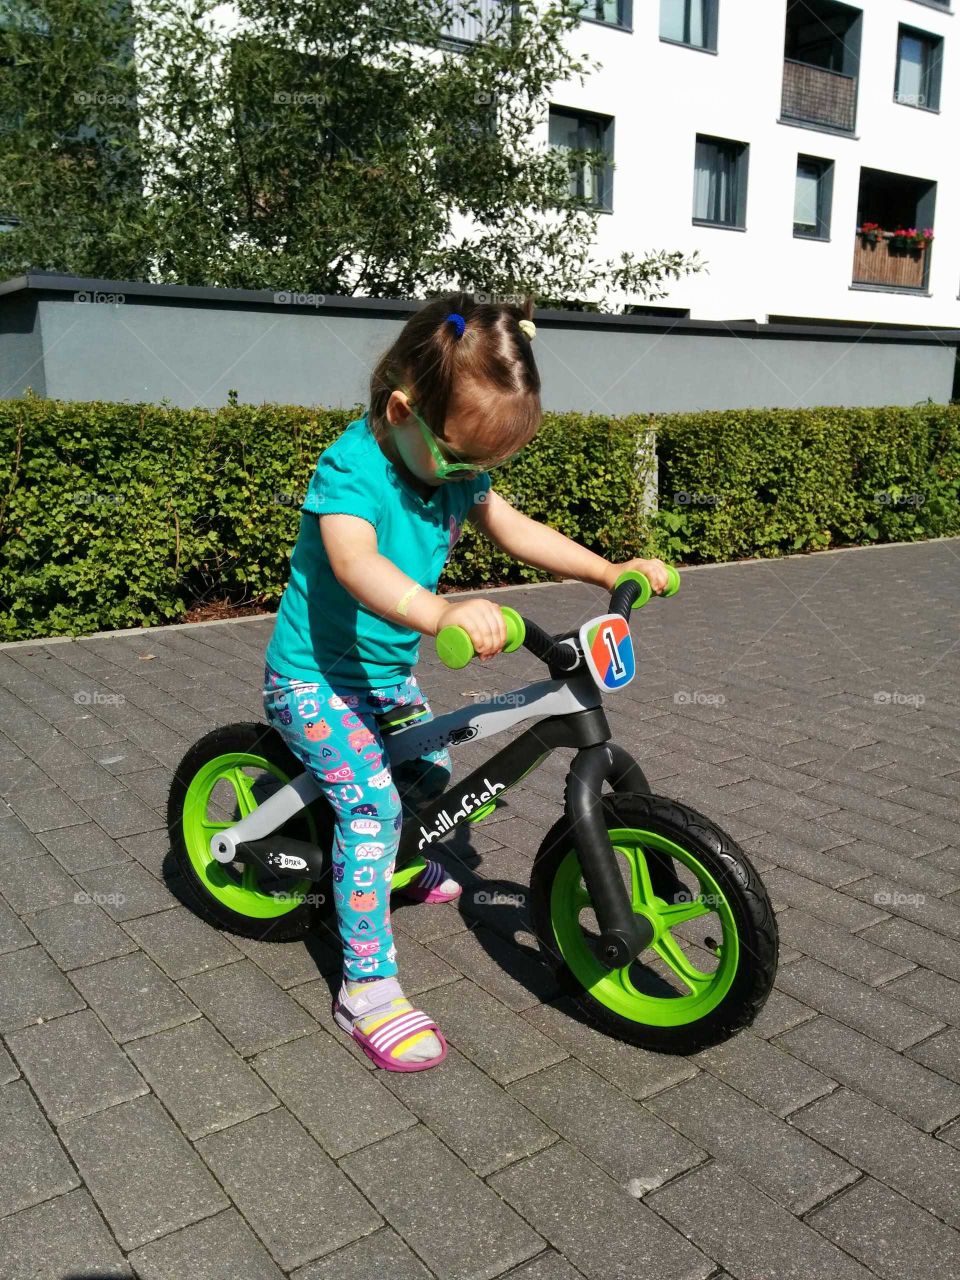 Wheel, Bike, Street, Exercise, Child